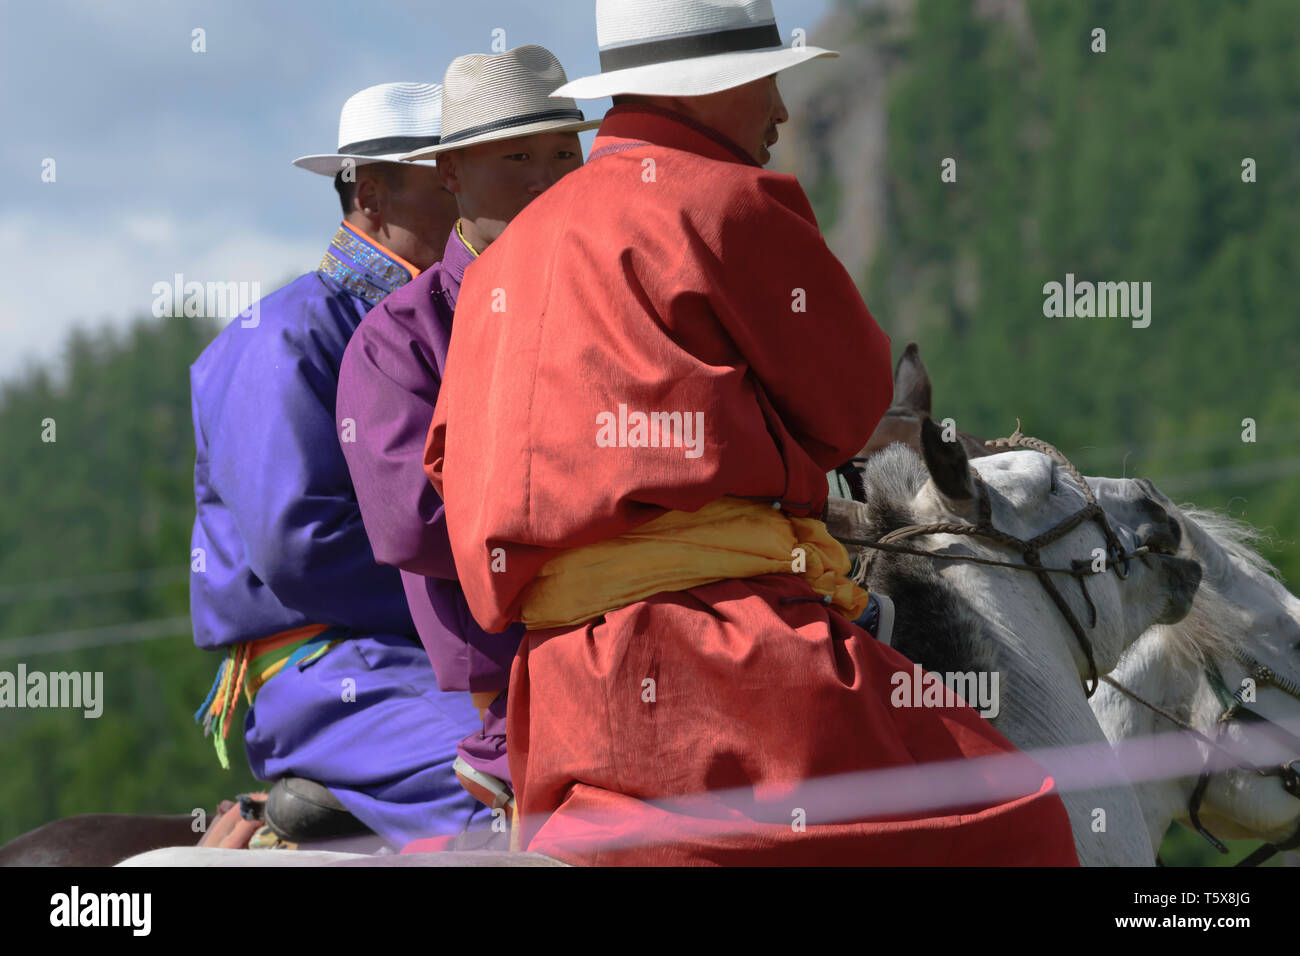 Festival Naadam à Khatgal, la Mongolie. Les jeunes horseriders dans leurs vêtements colorés Banque D'Images